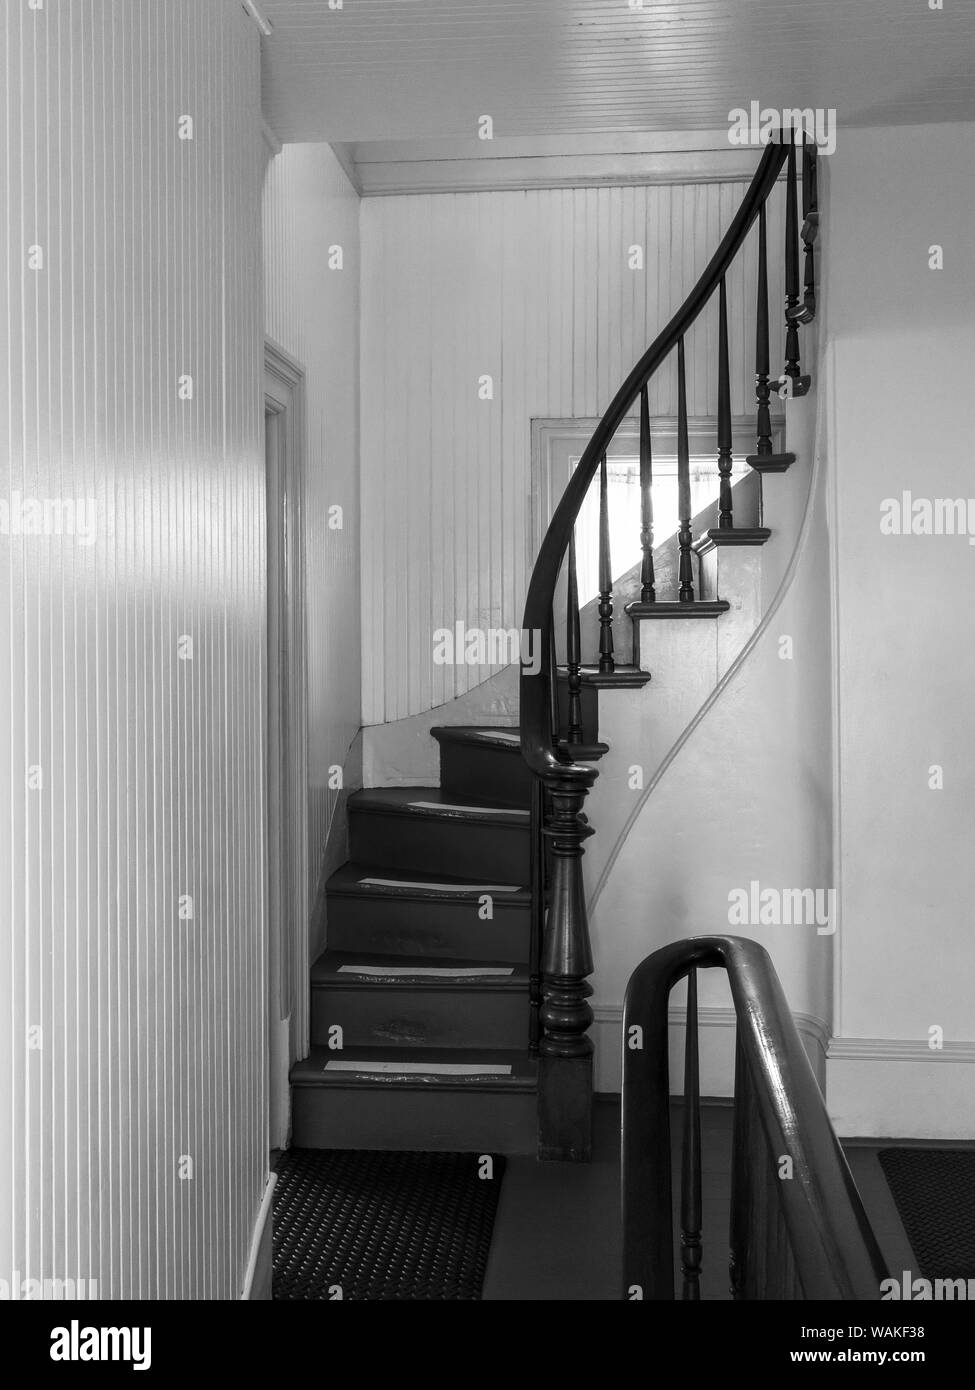 USA, New York, Newport. Le noir et blanc de l'escalier des quarts du gardien de phare. En tant que crédit : Wendy Kaveney Jaynes / Galerie / DanitaDelimont.com Banque D'Images